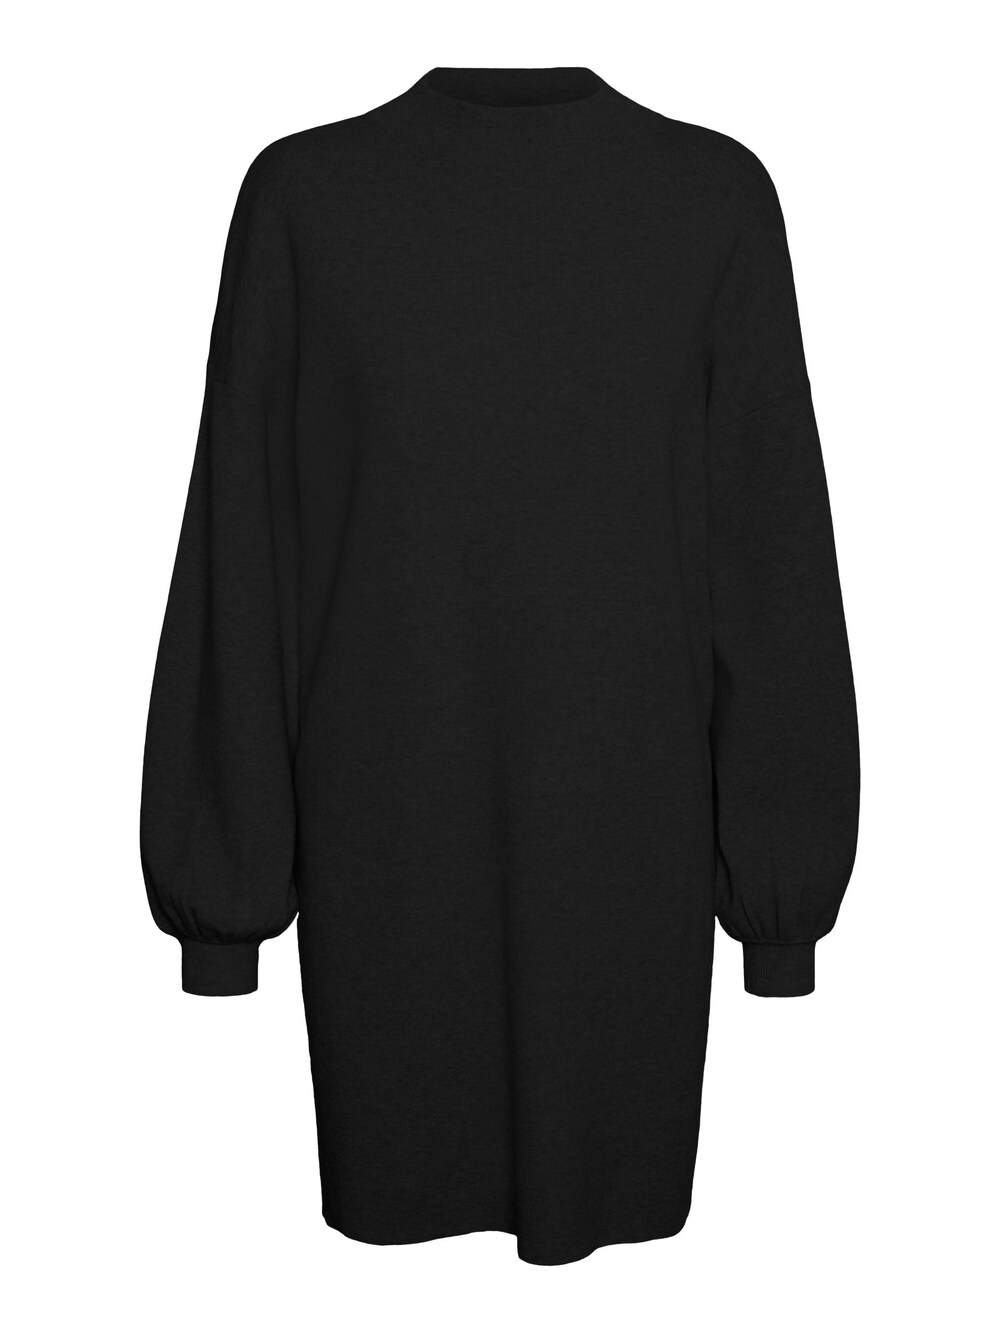 Вязанное платье Vero Moda Nancy, черный вязанное платье vero moda phillis черный